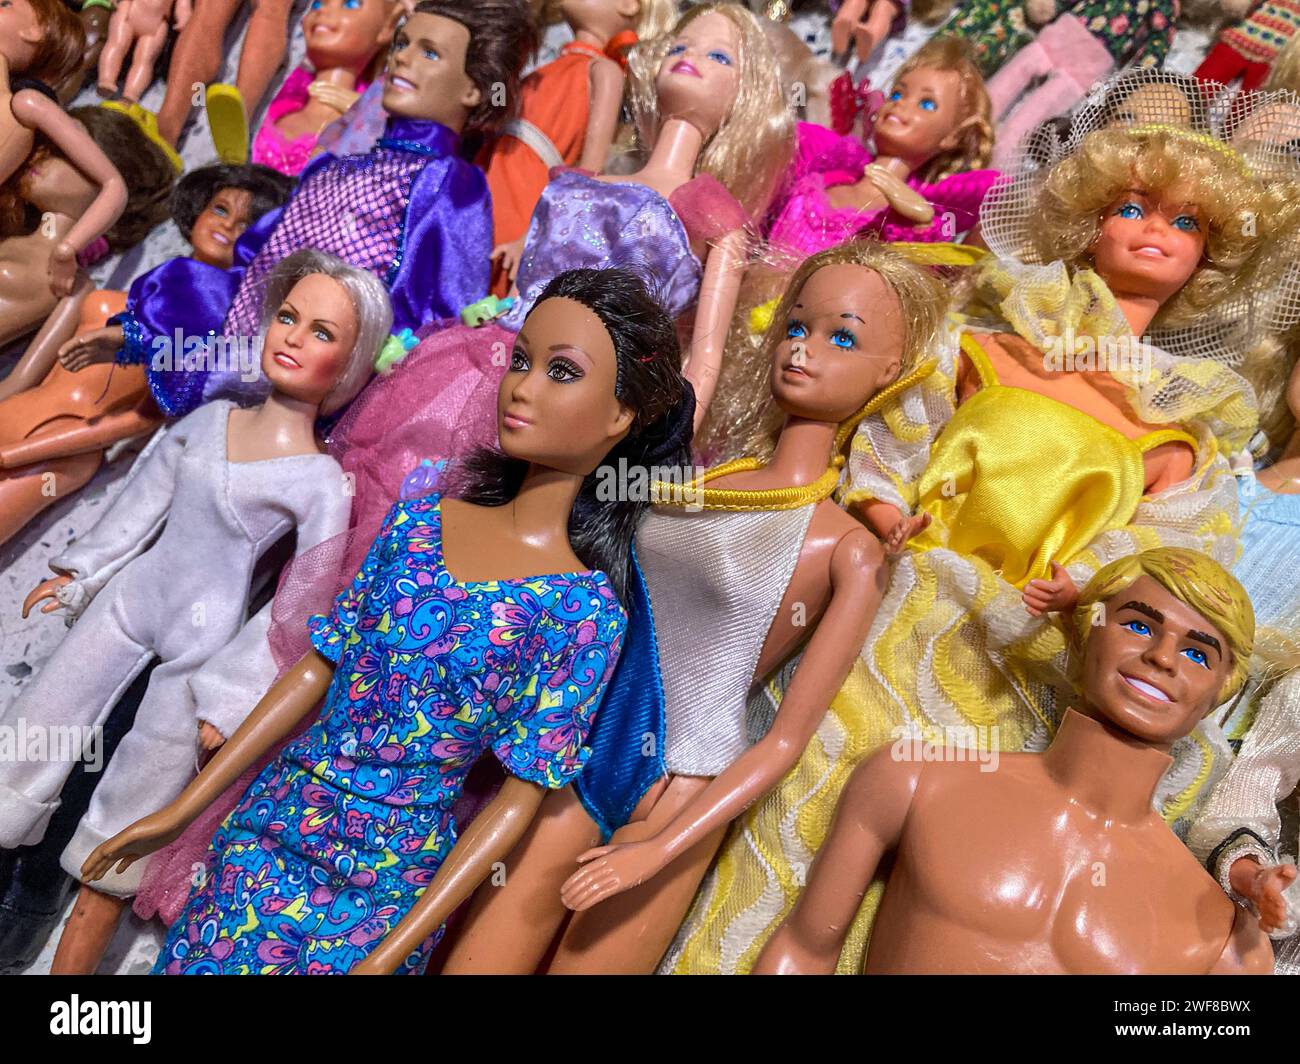 Collection de poupées Barbie vintage, États-Unis Banque D'Images